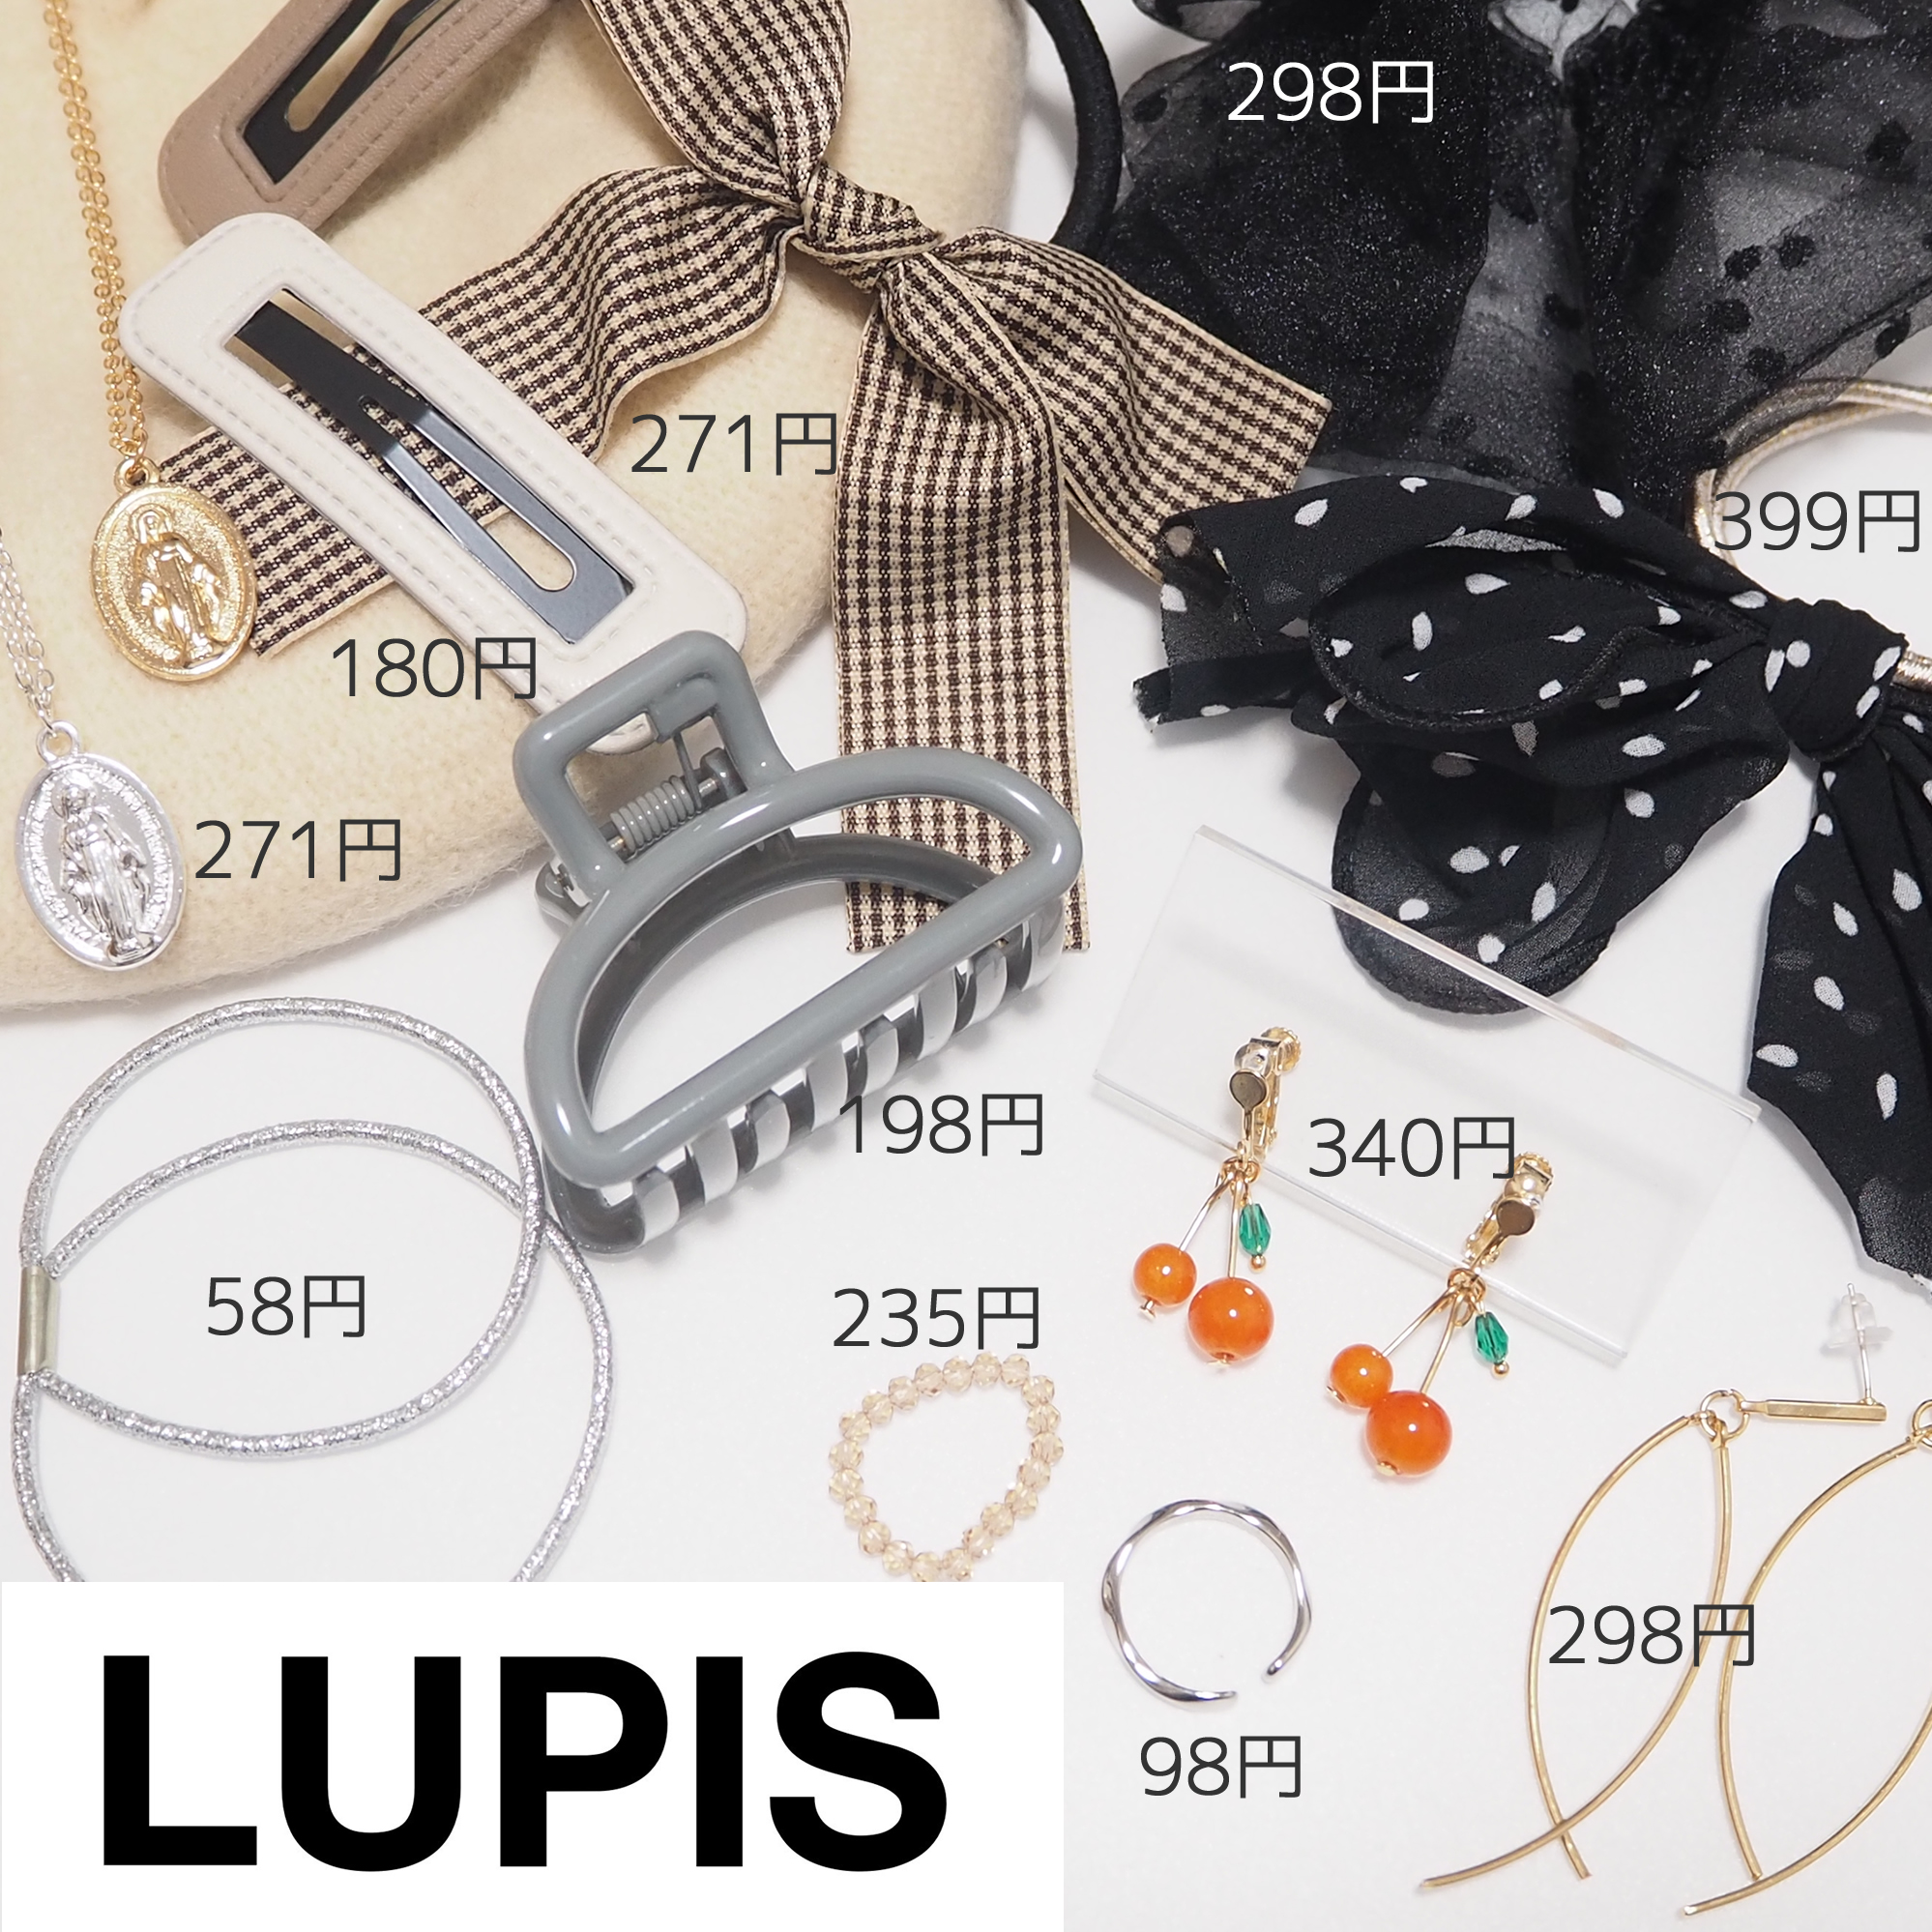 LUPIS(ルピス)激安通販アクセサリーの2022年9月の注文品レビュー | yuyuのプチプラセルフネイル